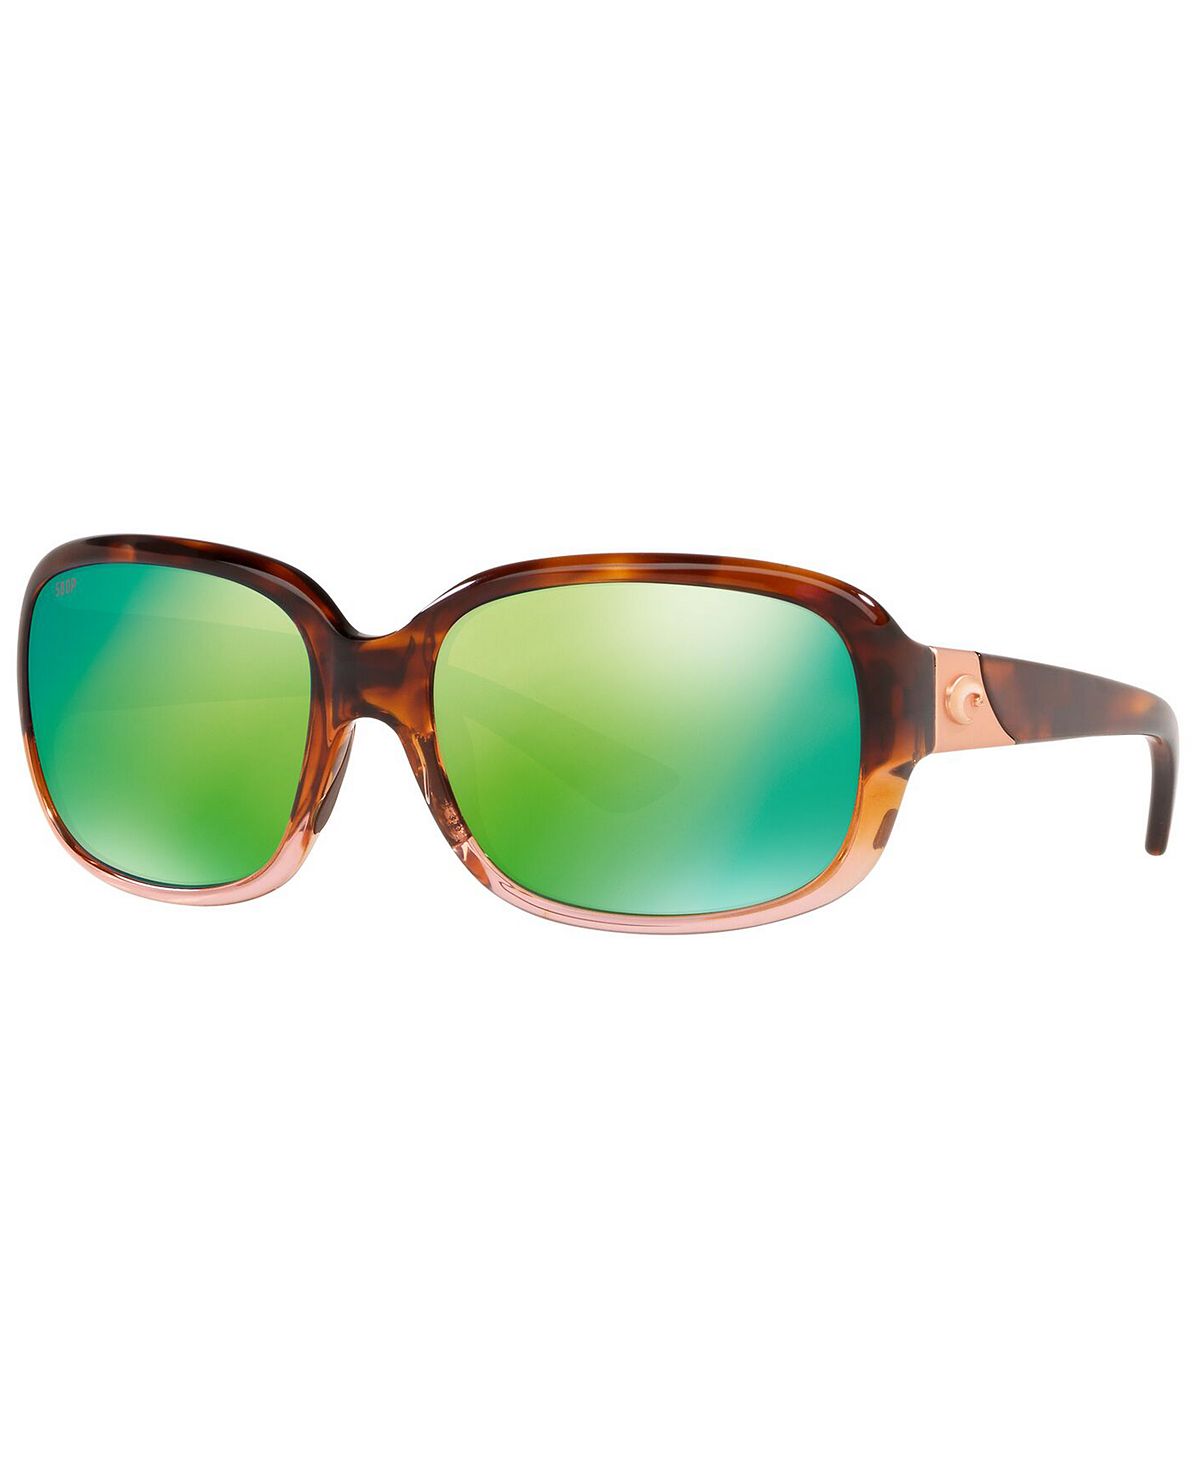 Женские поляризованные солнцезащитные очки GANNET 58 Costa Del Mar